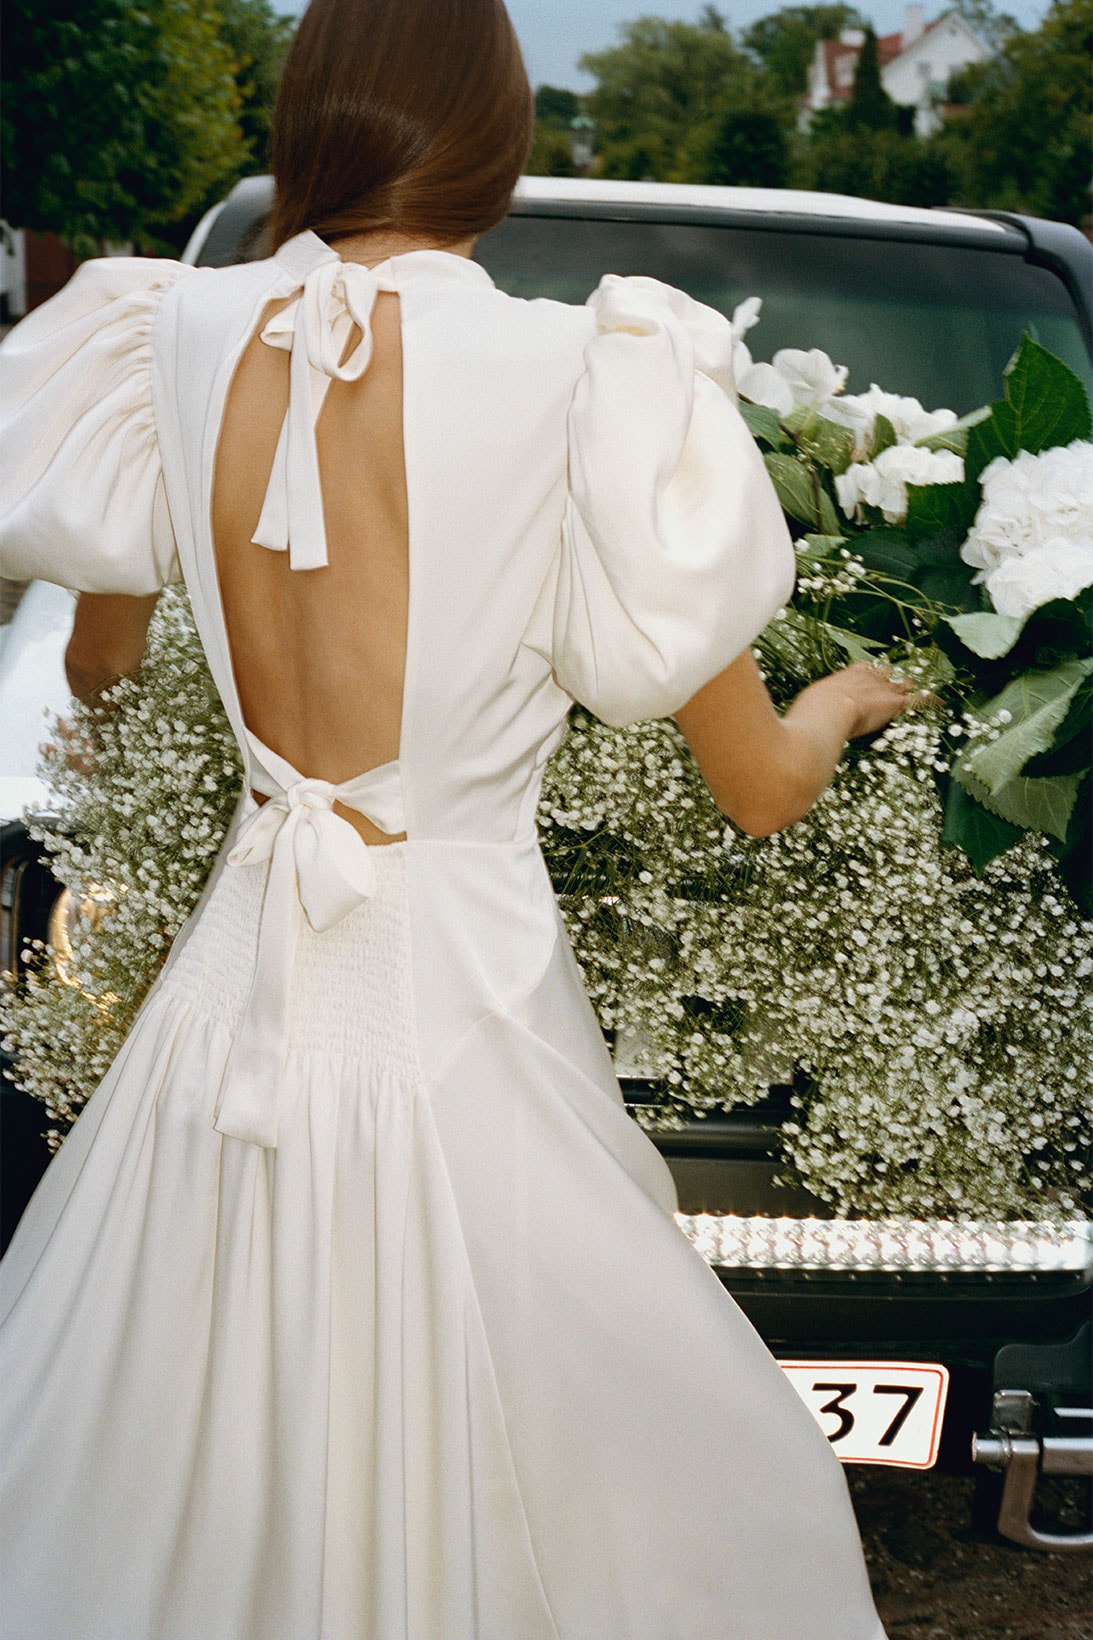 ROTATE Birger Christensen Wedding Bridal Wear Dresses Thora Valdimars Jeanette Madsen Launch